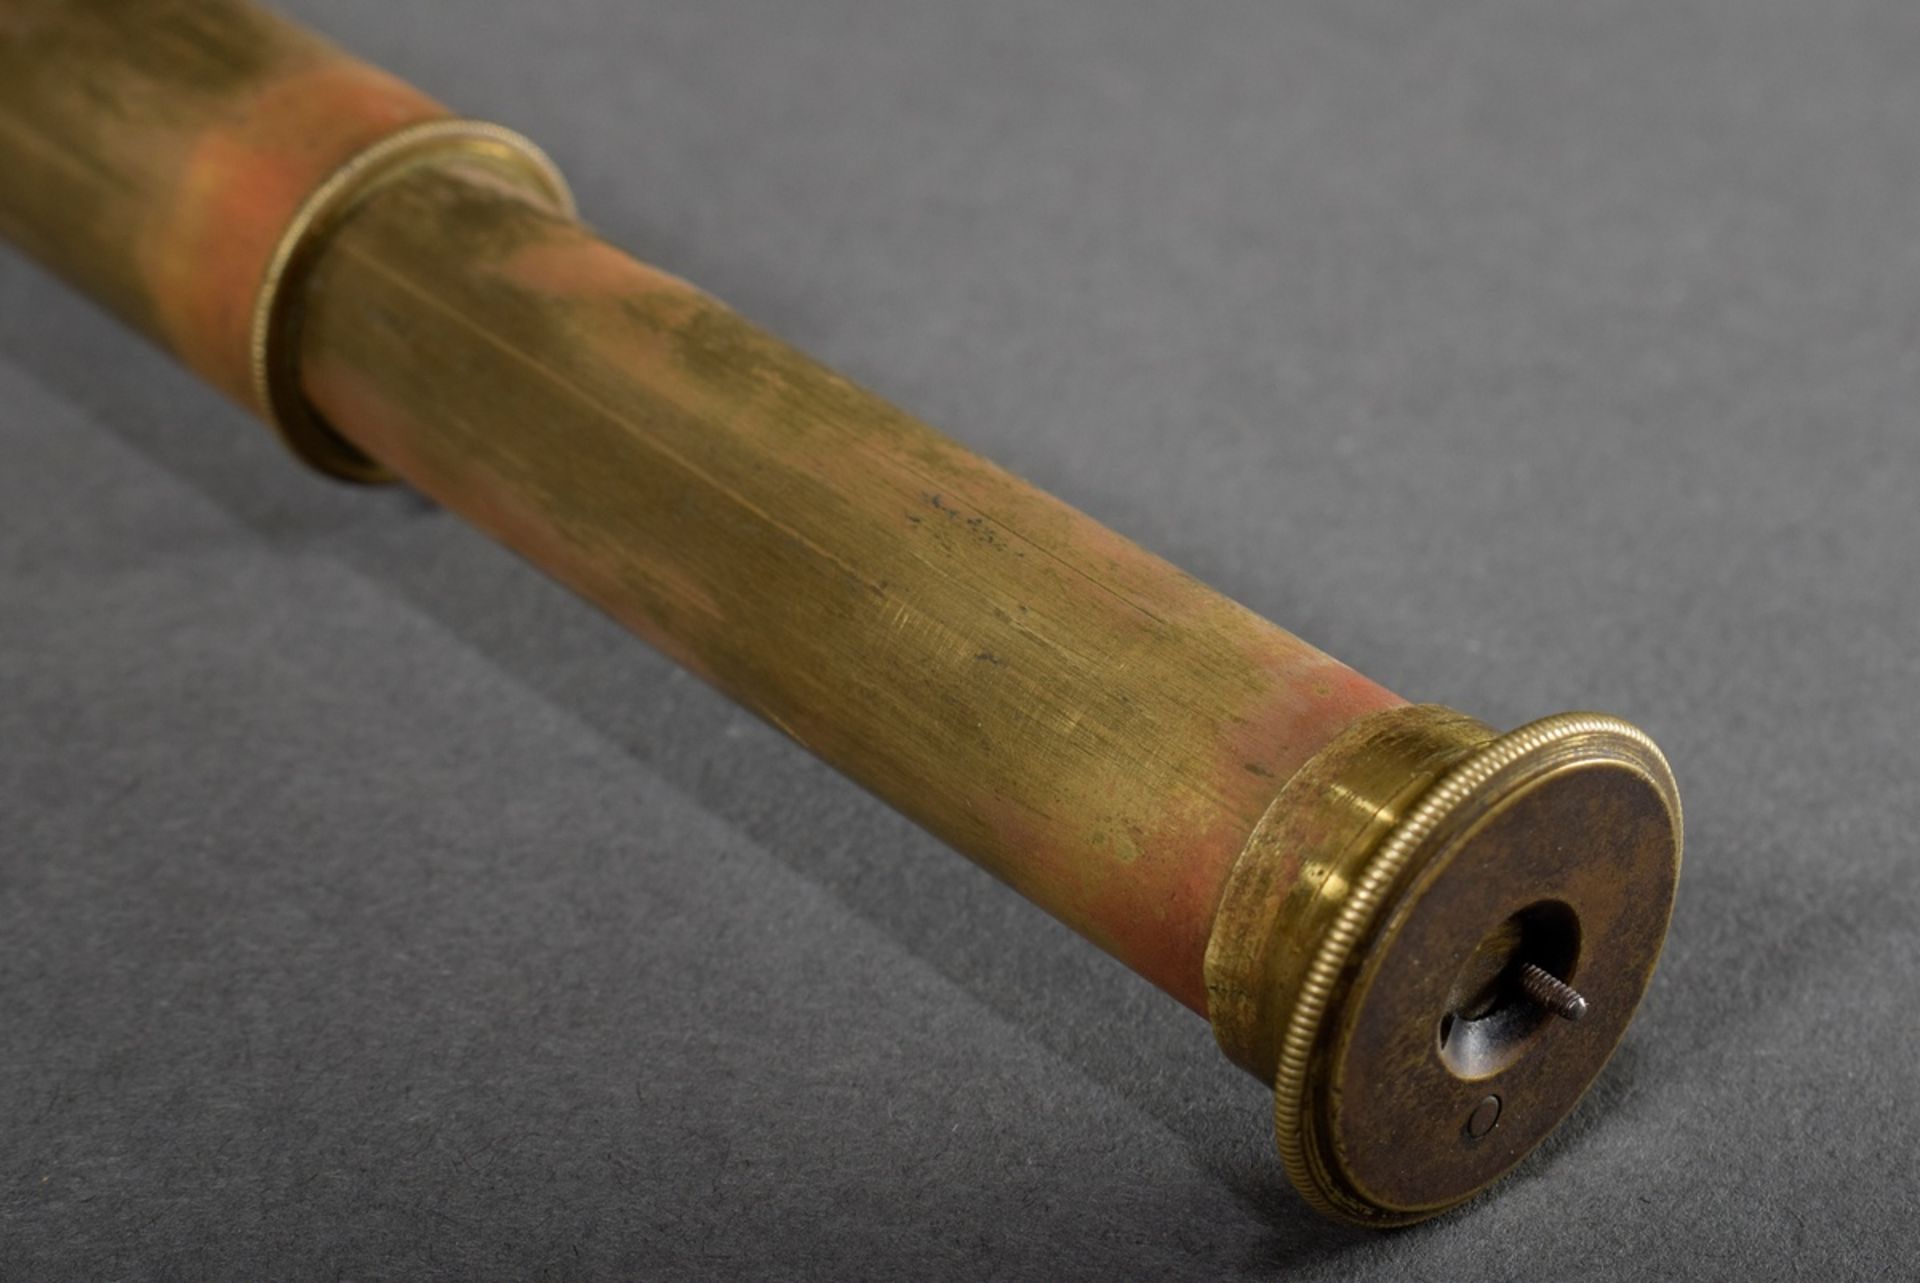 Teleskop-Fernrohr mit Holz verkleidetem Messinggehäuse, L. 15,5-36,5cm, etwas defekt - Bild 4 aus 6